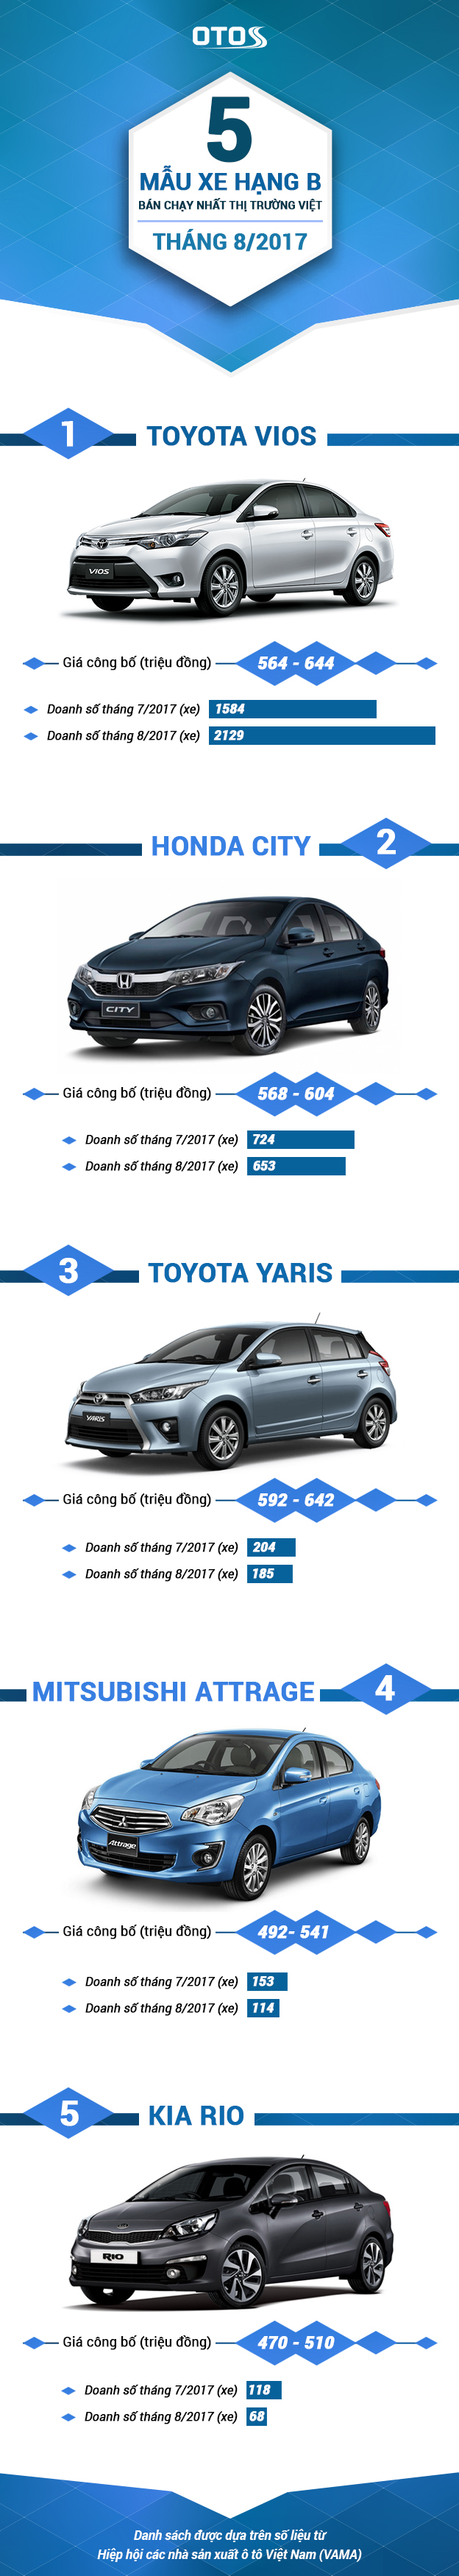 [Infographic] 5 mẫu xe hạng B bán chạy nhất thị trường Việt tháng 8/2017